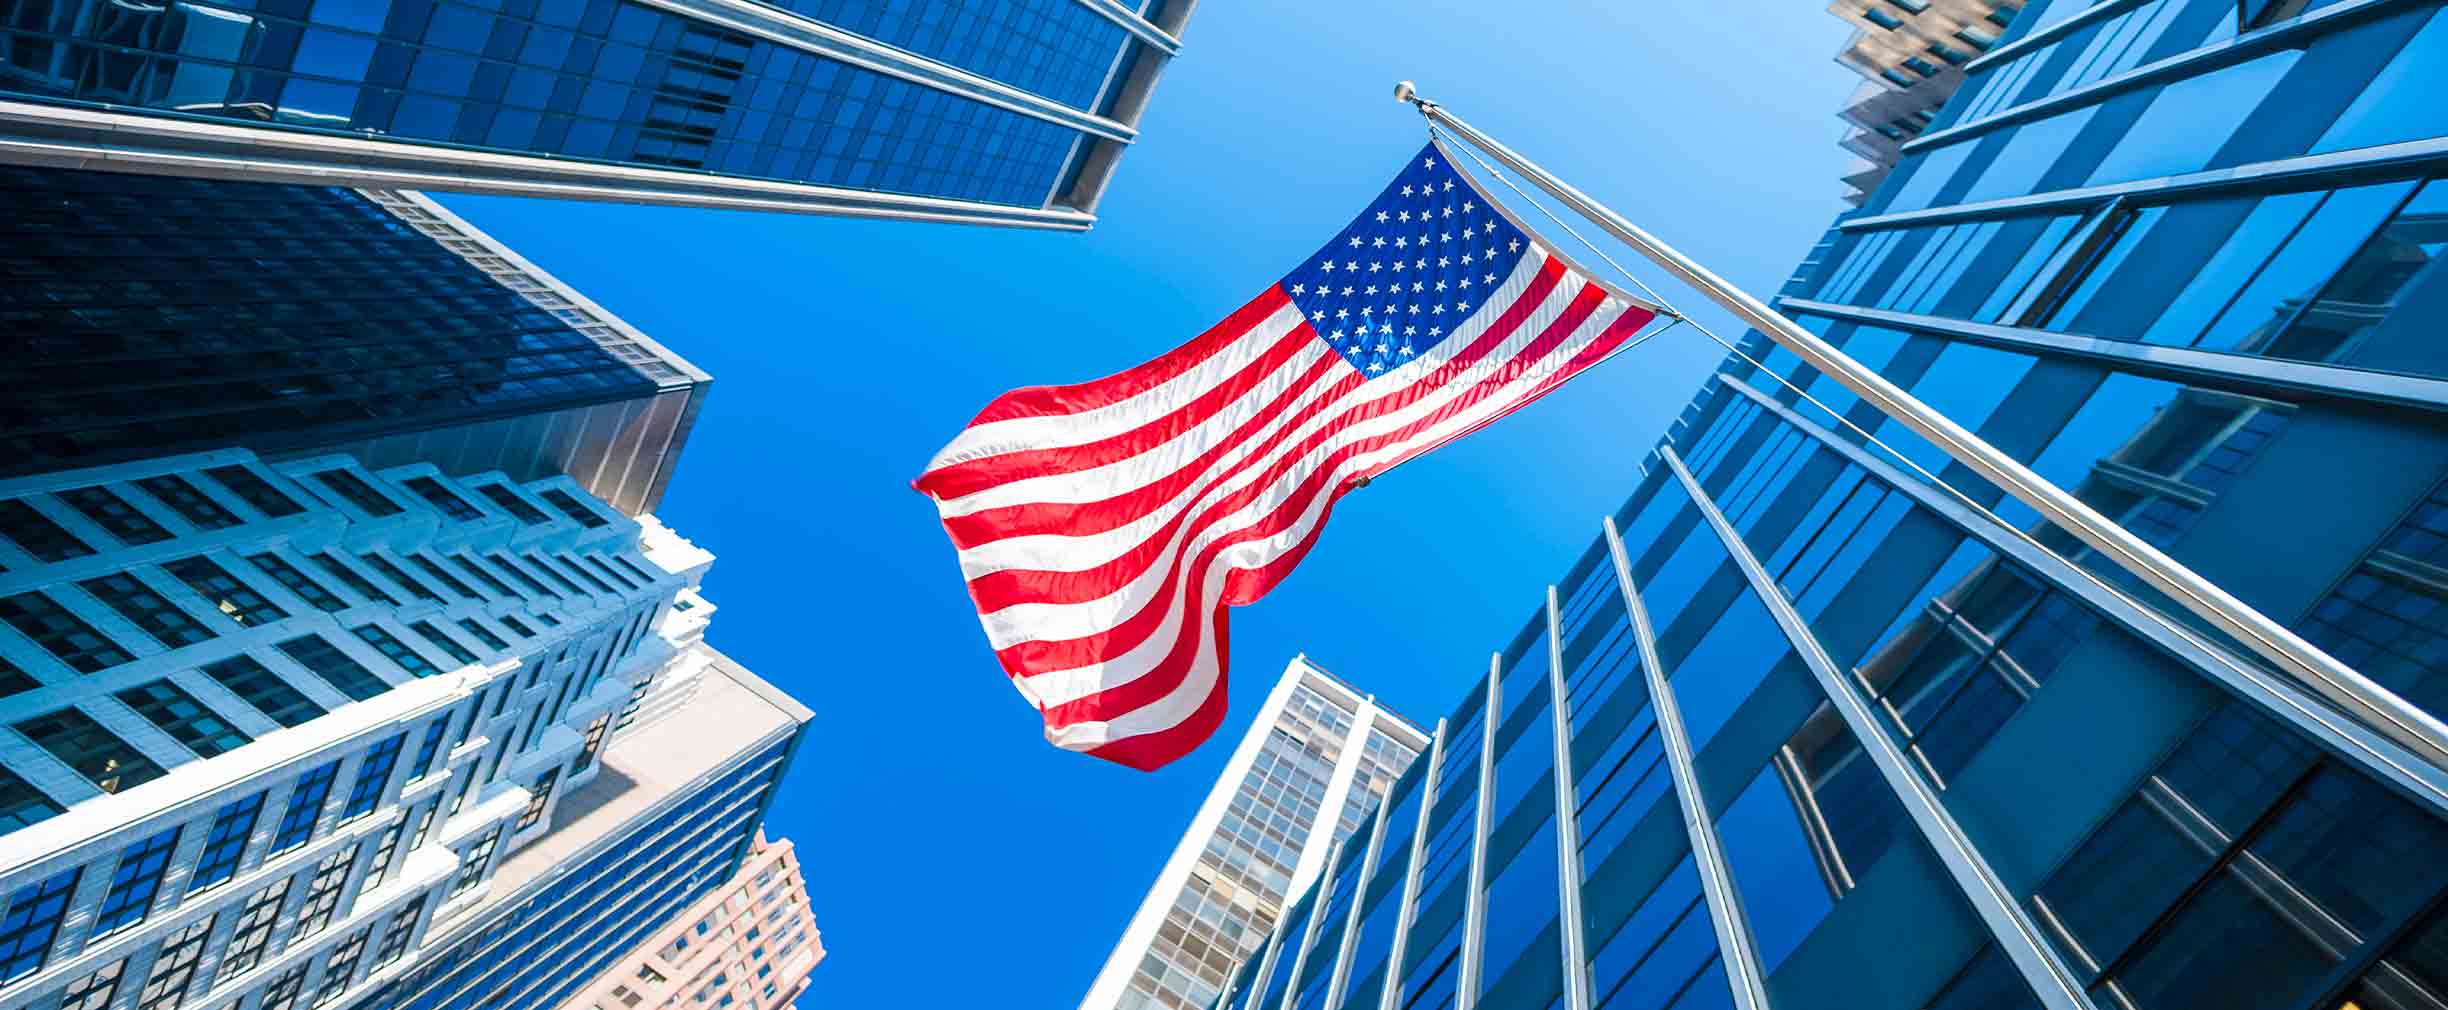 Vista de la bandera estadounidense flameando, con edificios altos que la rodean.